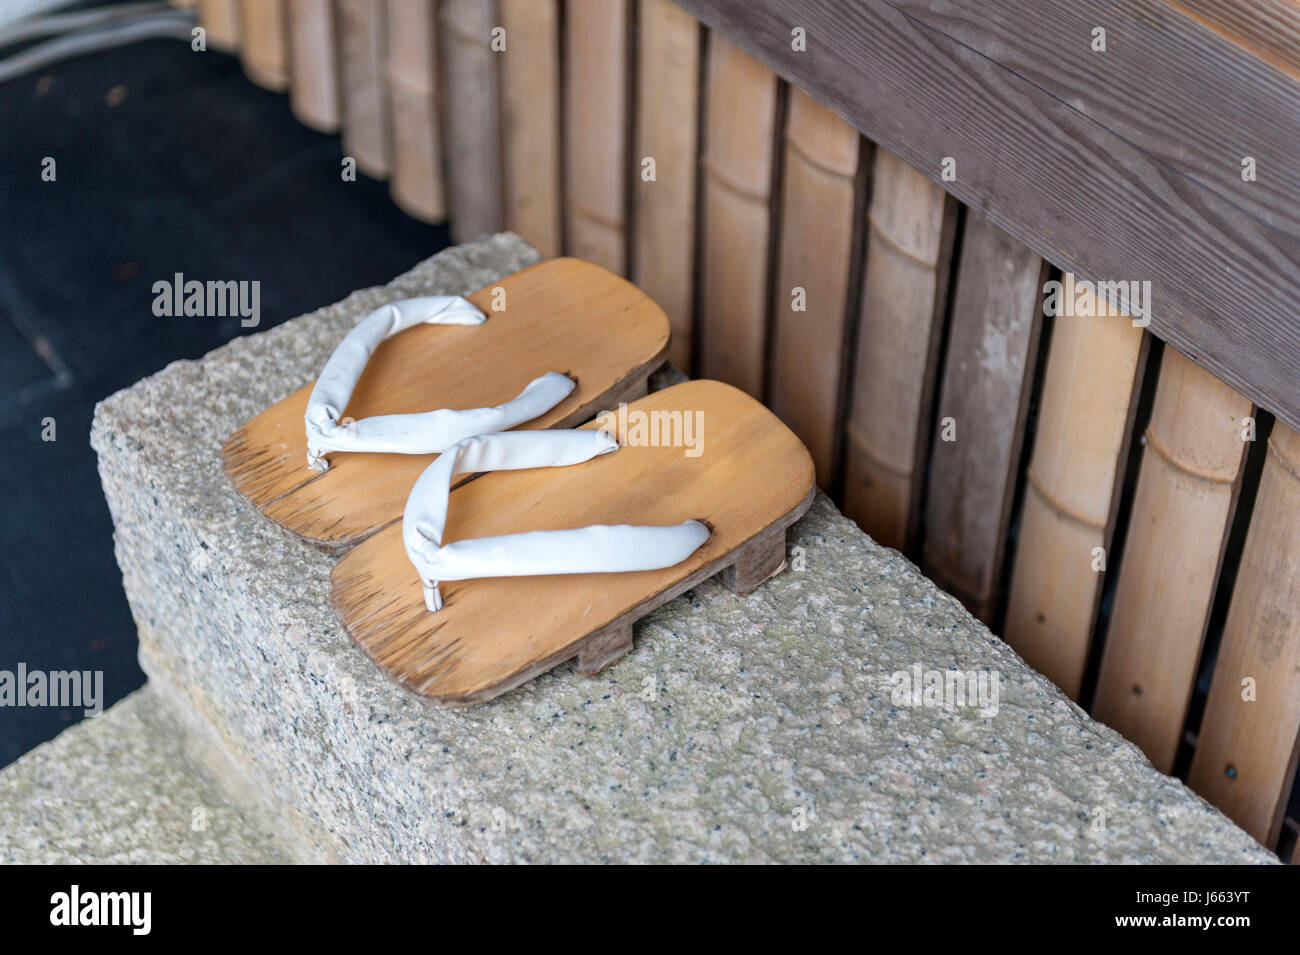 Geta oder traditionelle japanische Schuhe, eine Art von Flip-flops oder Sandalen mit einem erhöhten Holzsockel statt auf den Fuß mit einem Stoffband Tanga Stockfoto